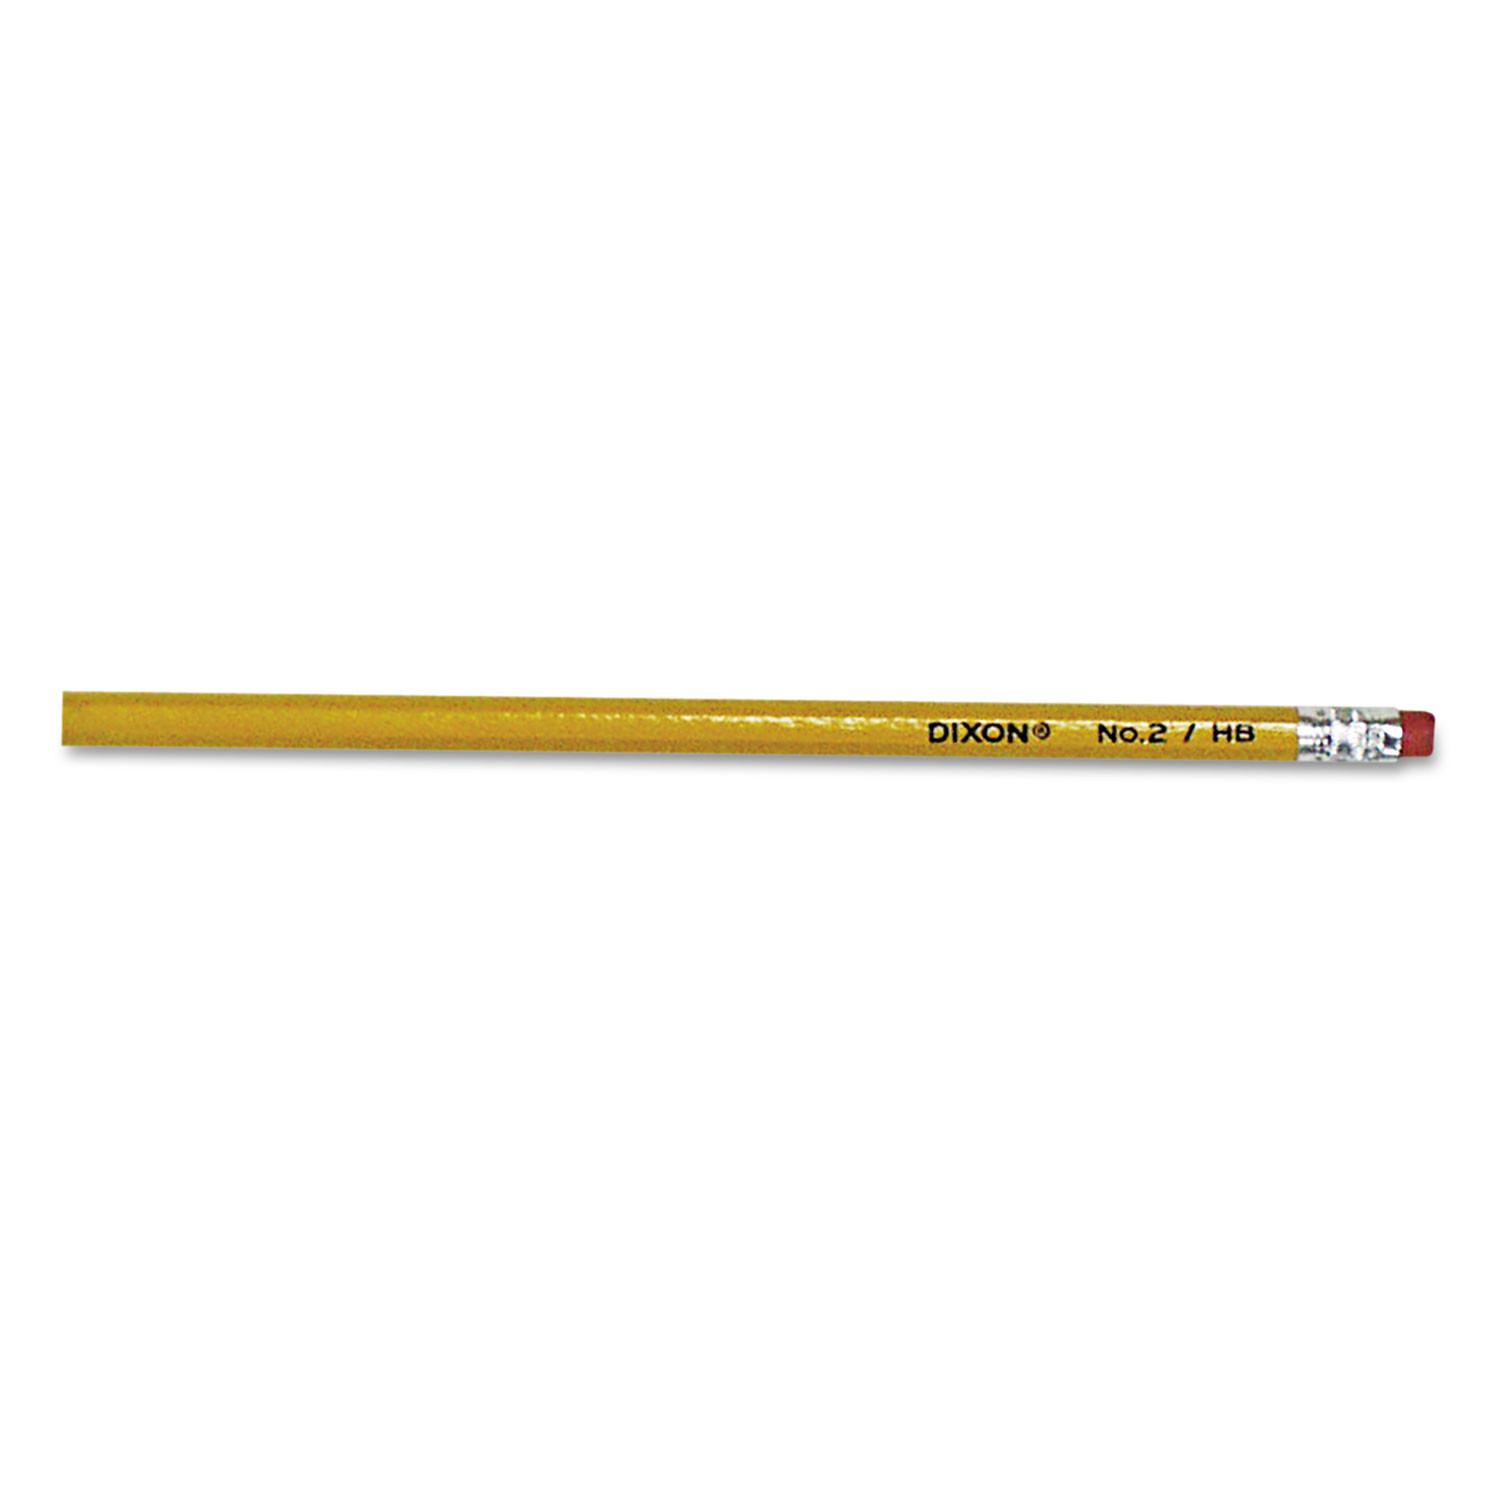 Dixon No. 2 Pencil